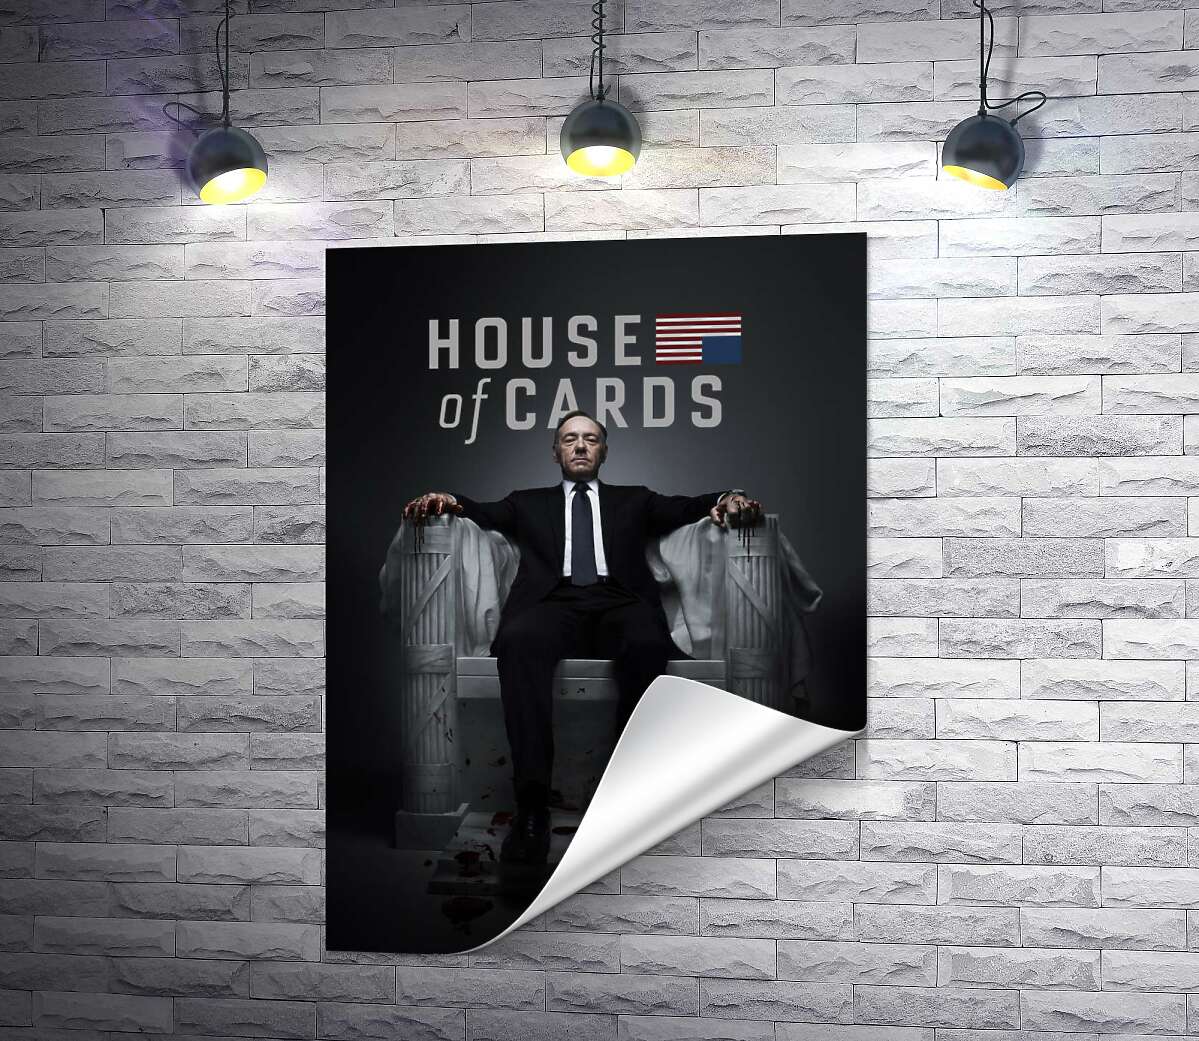 печать Фрэнсис Андервуд на интригующем постере к фильму "Карточный дом" ("House of cards")